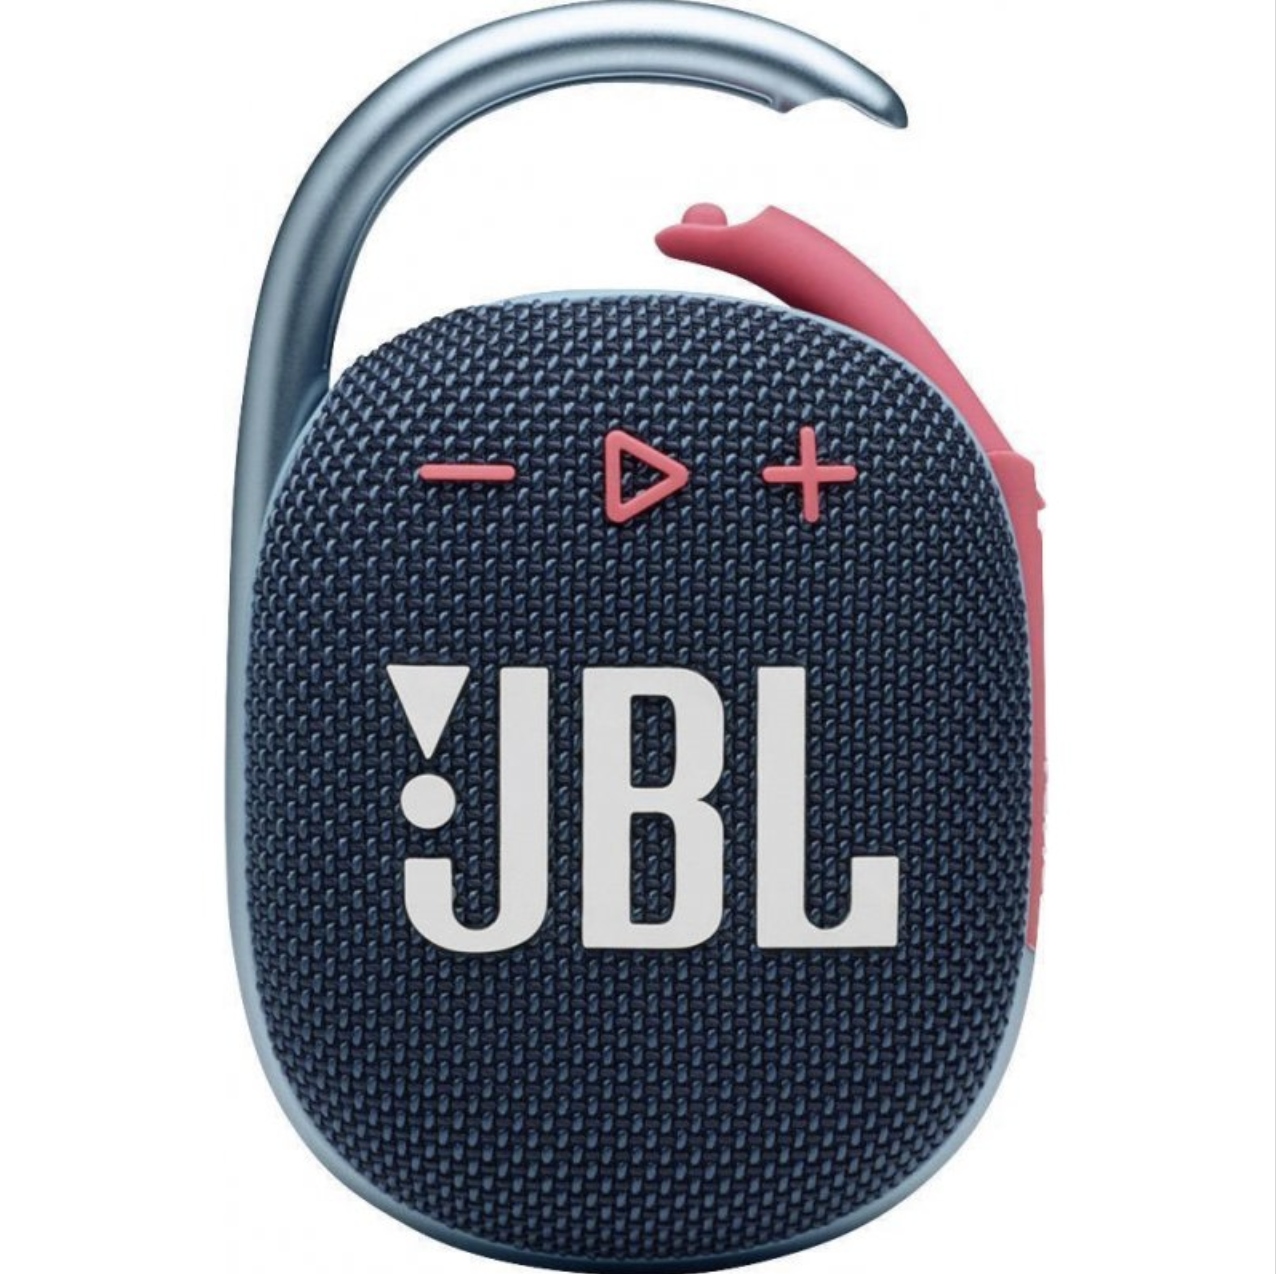 JBL Clip 4 Blue Pink (JBLCLIP4BLUP)